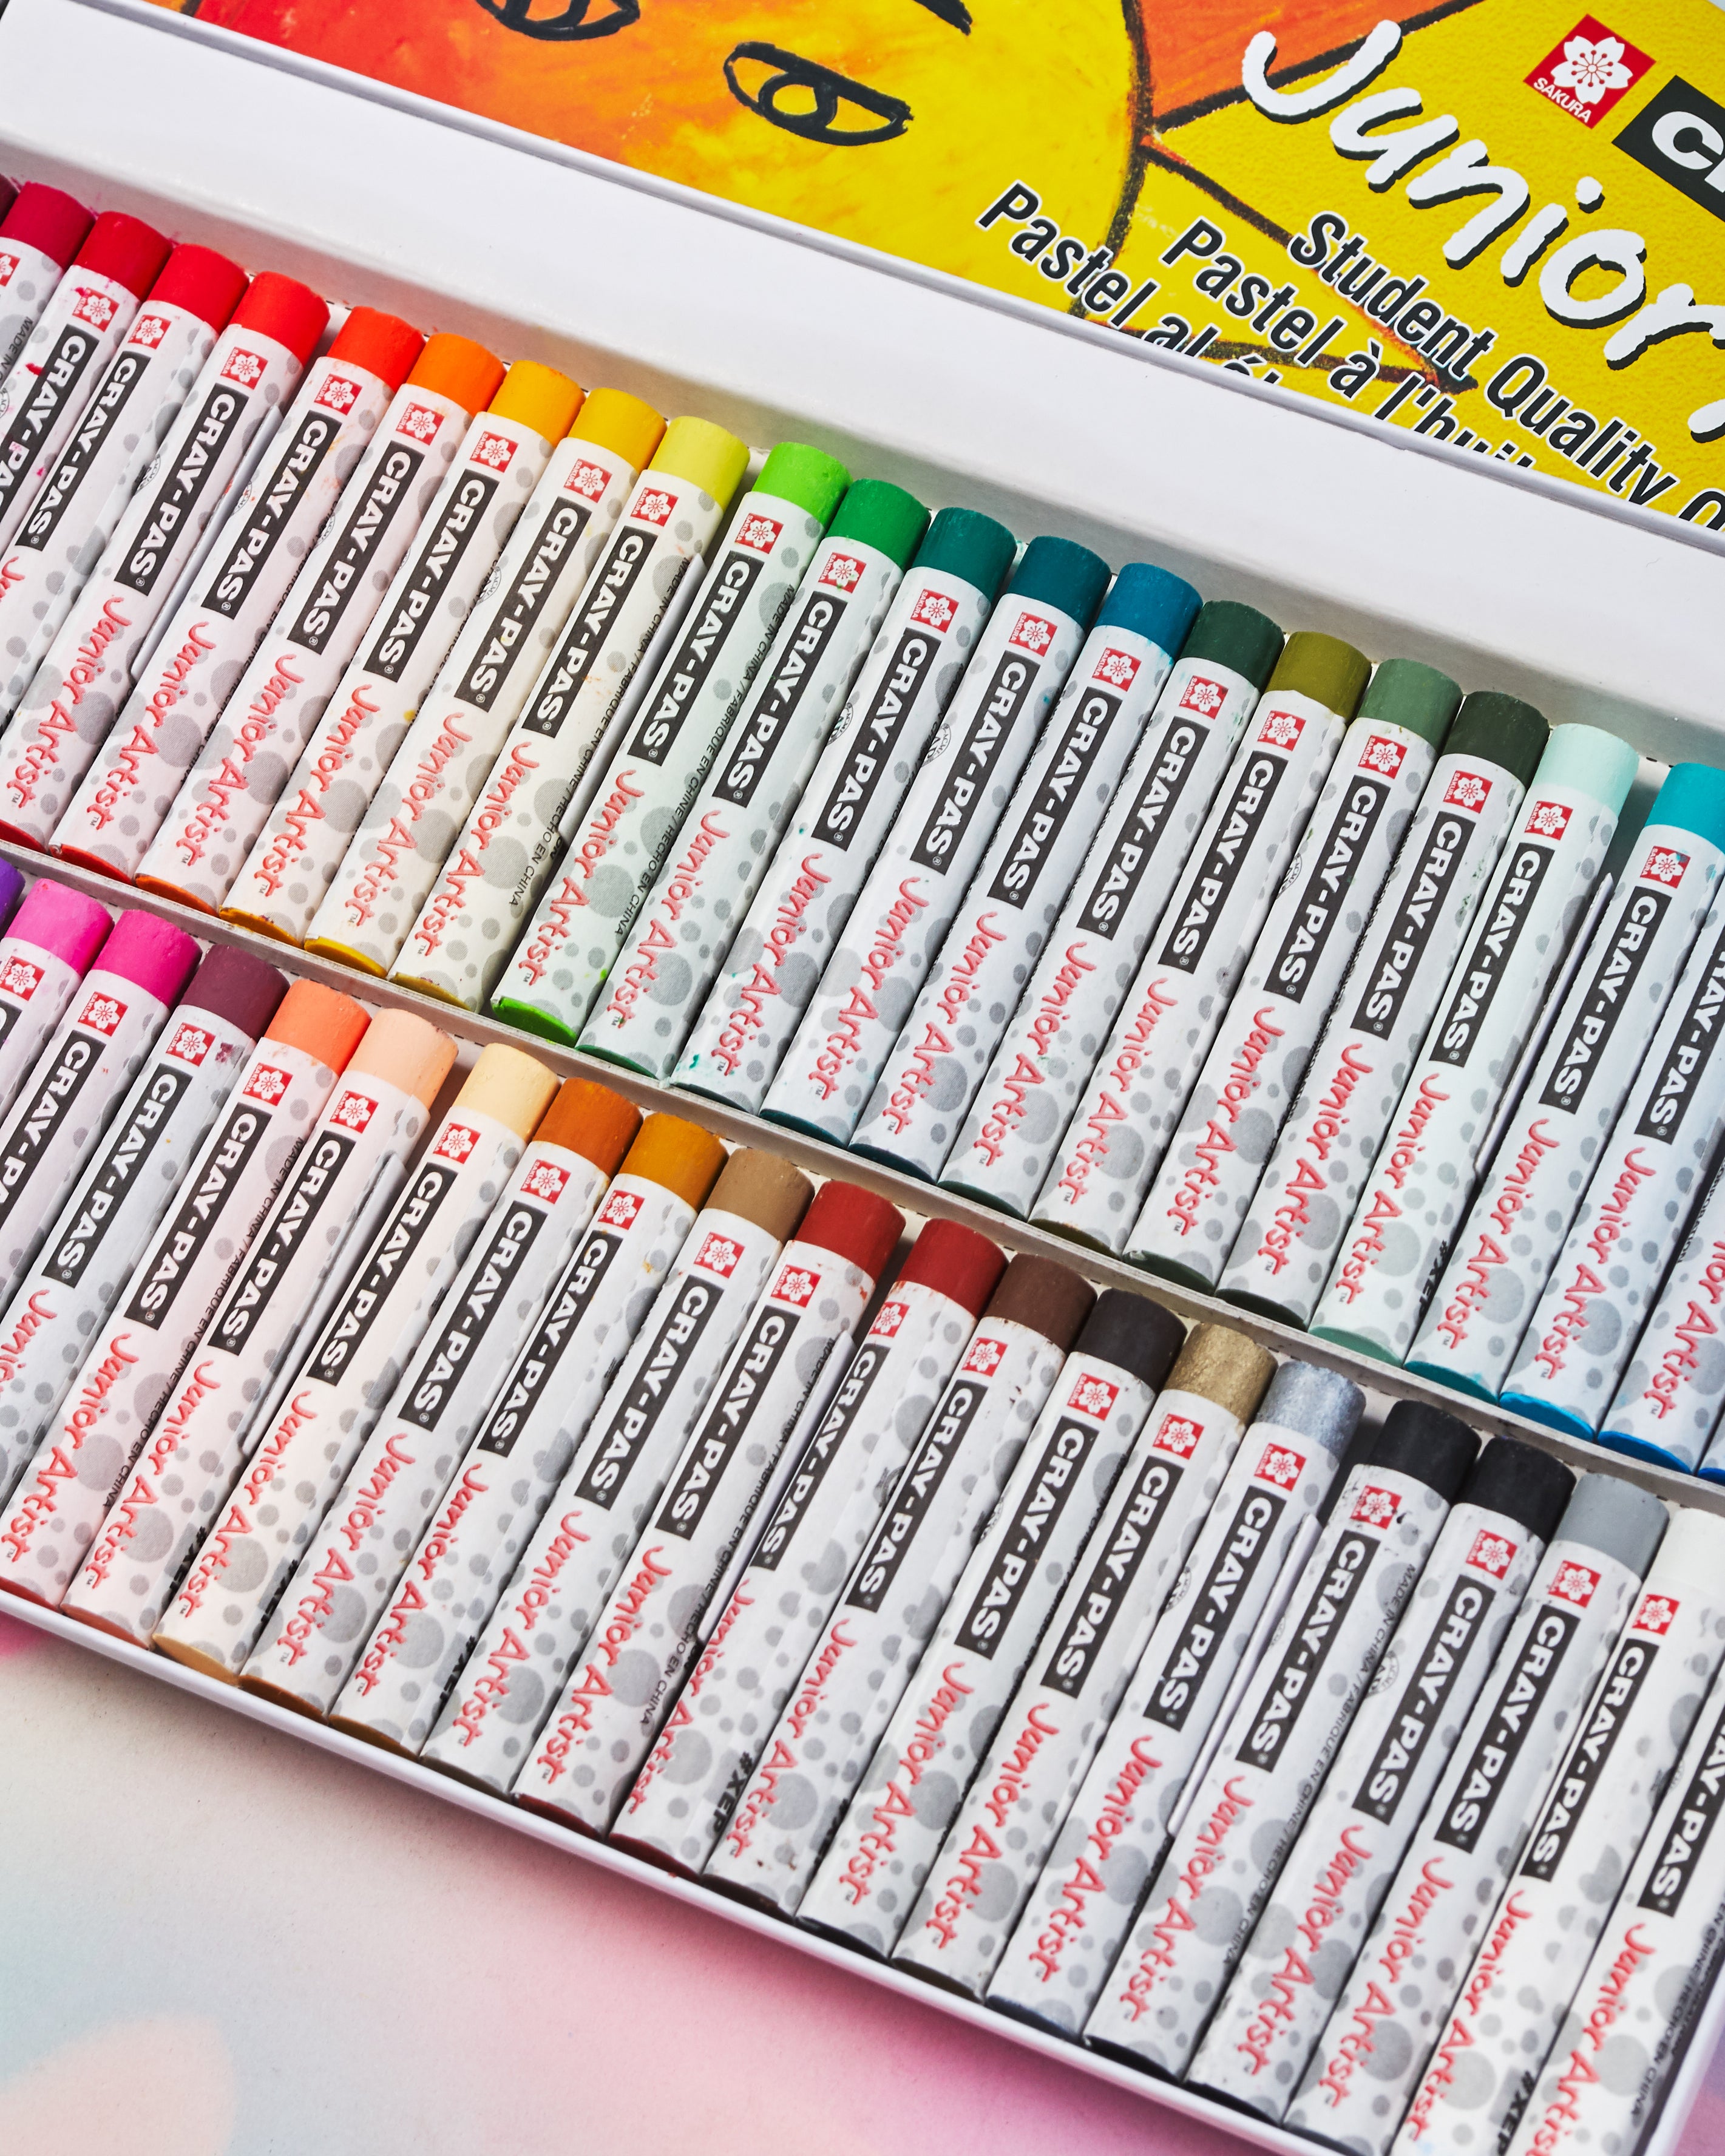 Cray-Pas Junior Artist Oil Pastels 12-Color Set